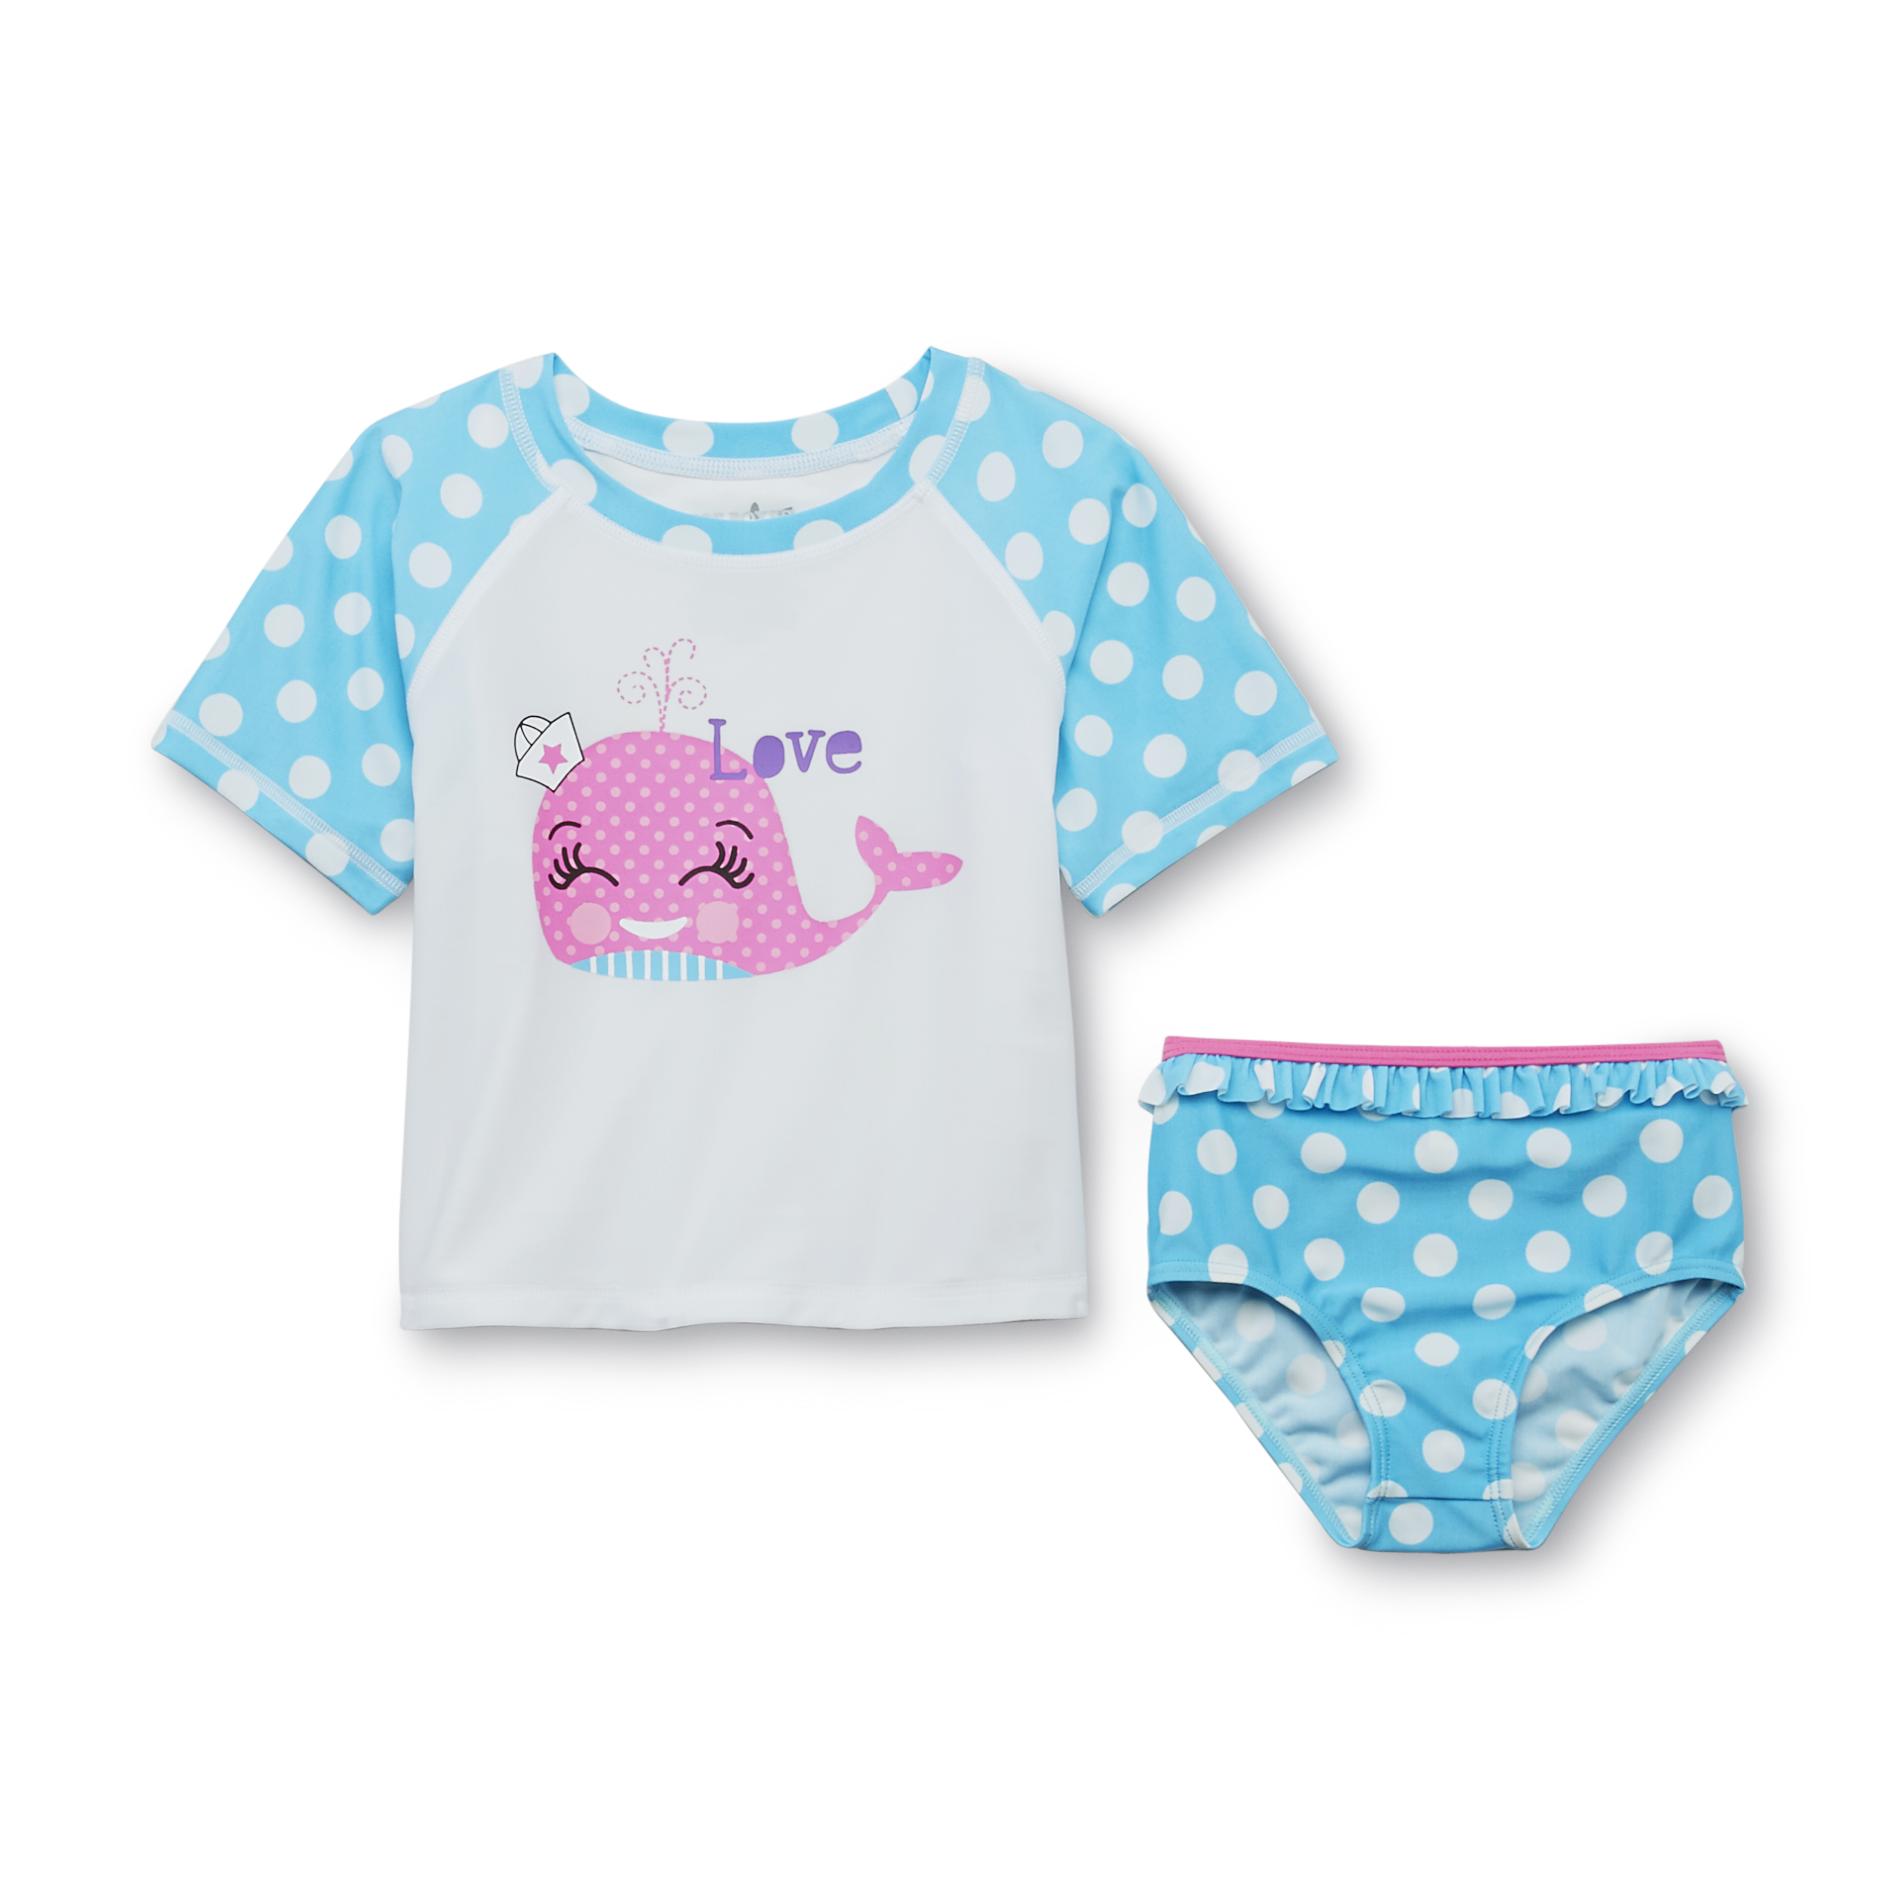 Joe Boxer Infant & Toddler Girl's Swimsuit Top & Bottoms - Polka-Dot Whale